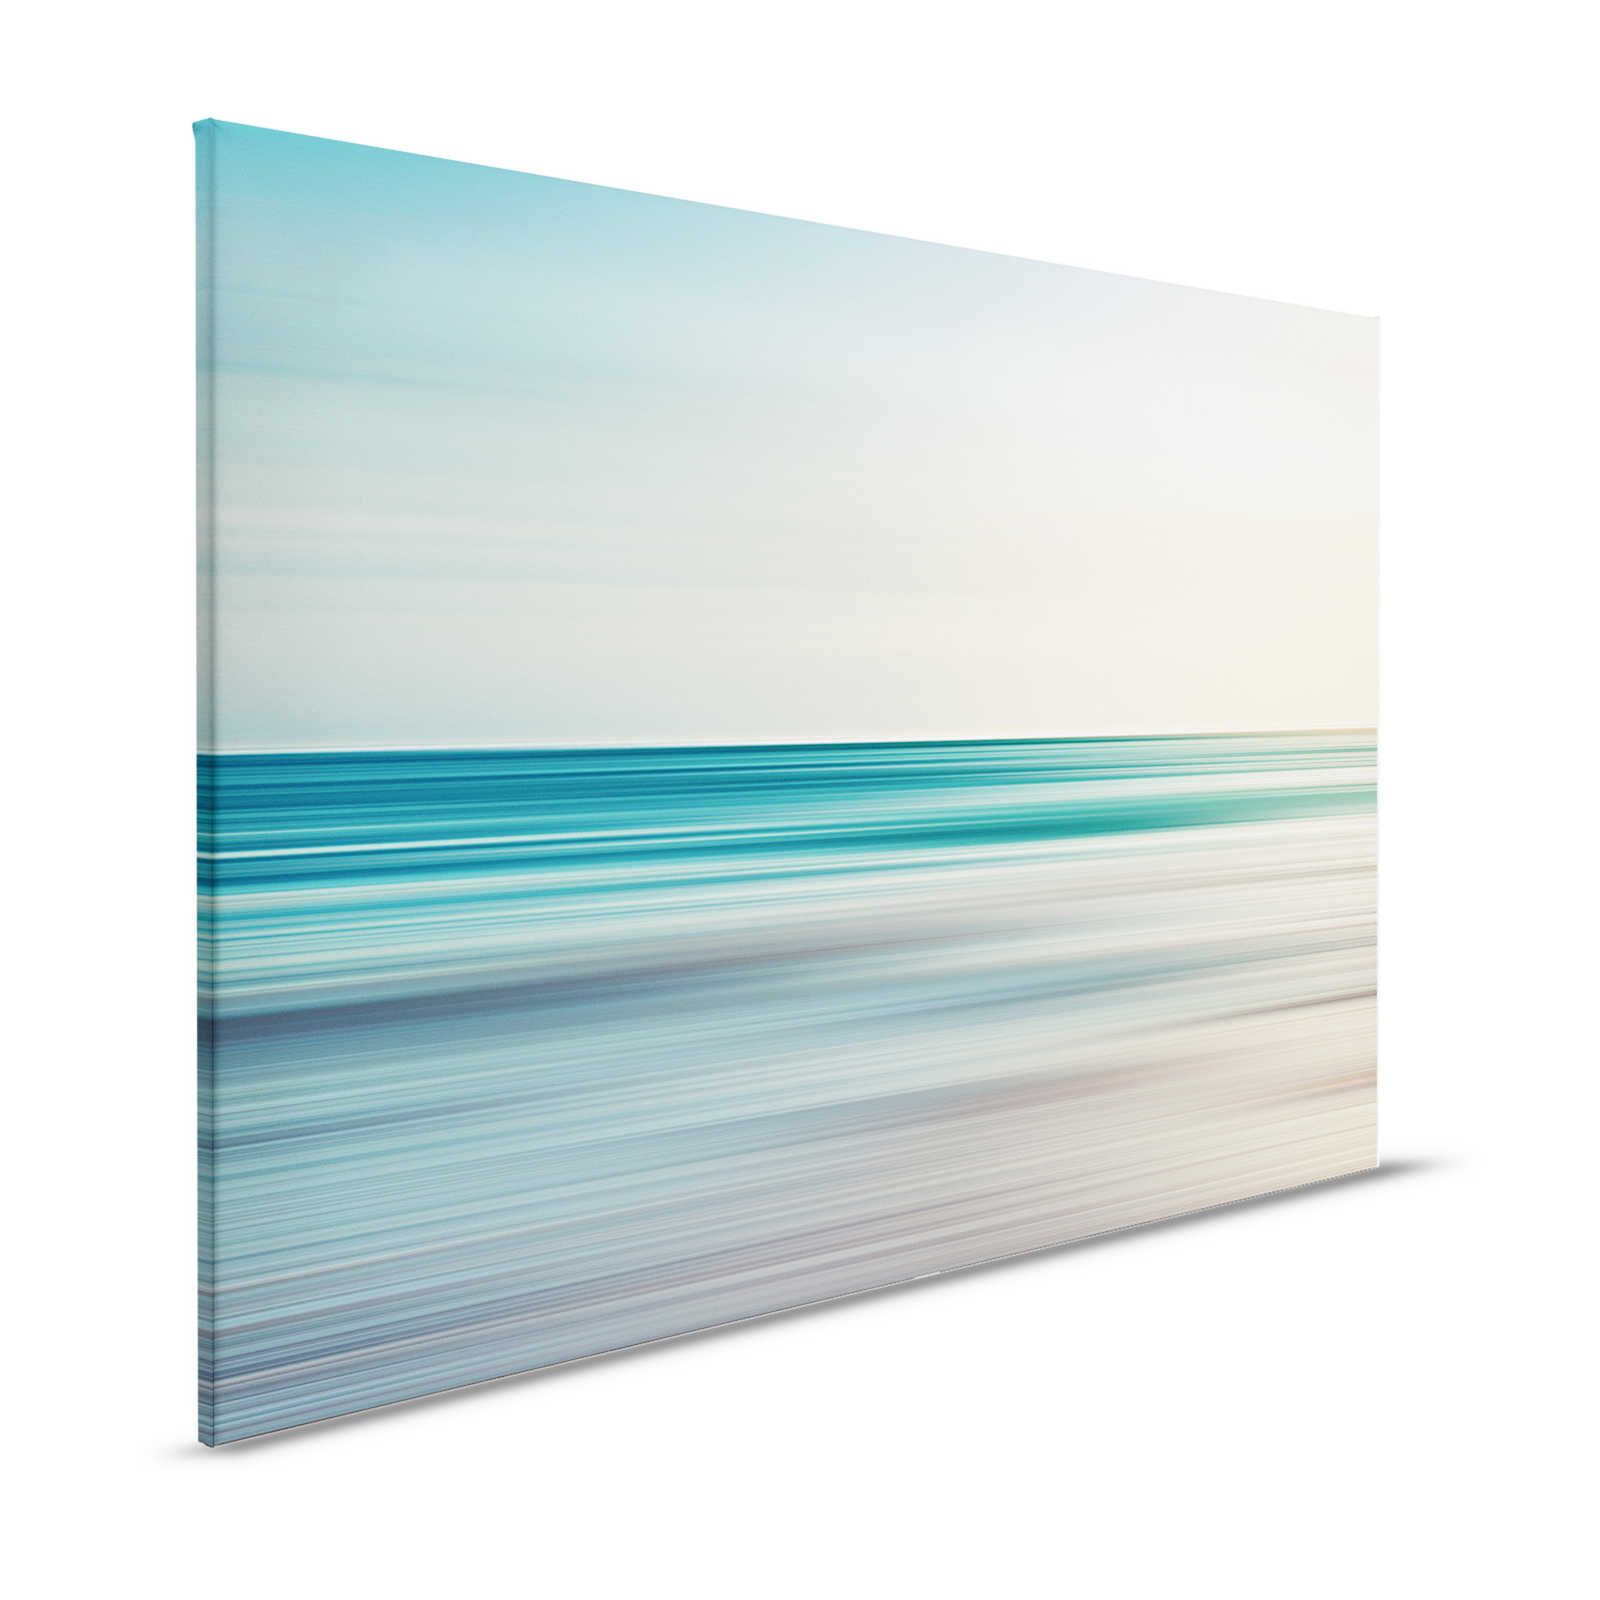 Horizon 1 - Canvas schilderij abstract landschap in blauw - 1,20 m x 0,80 m
